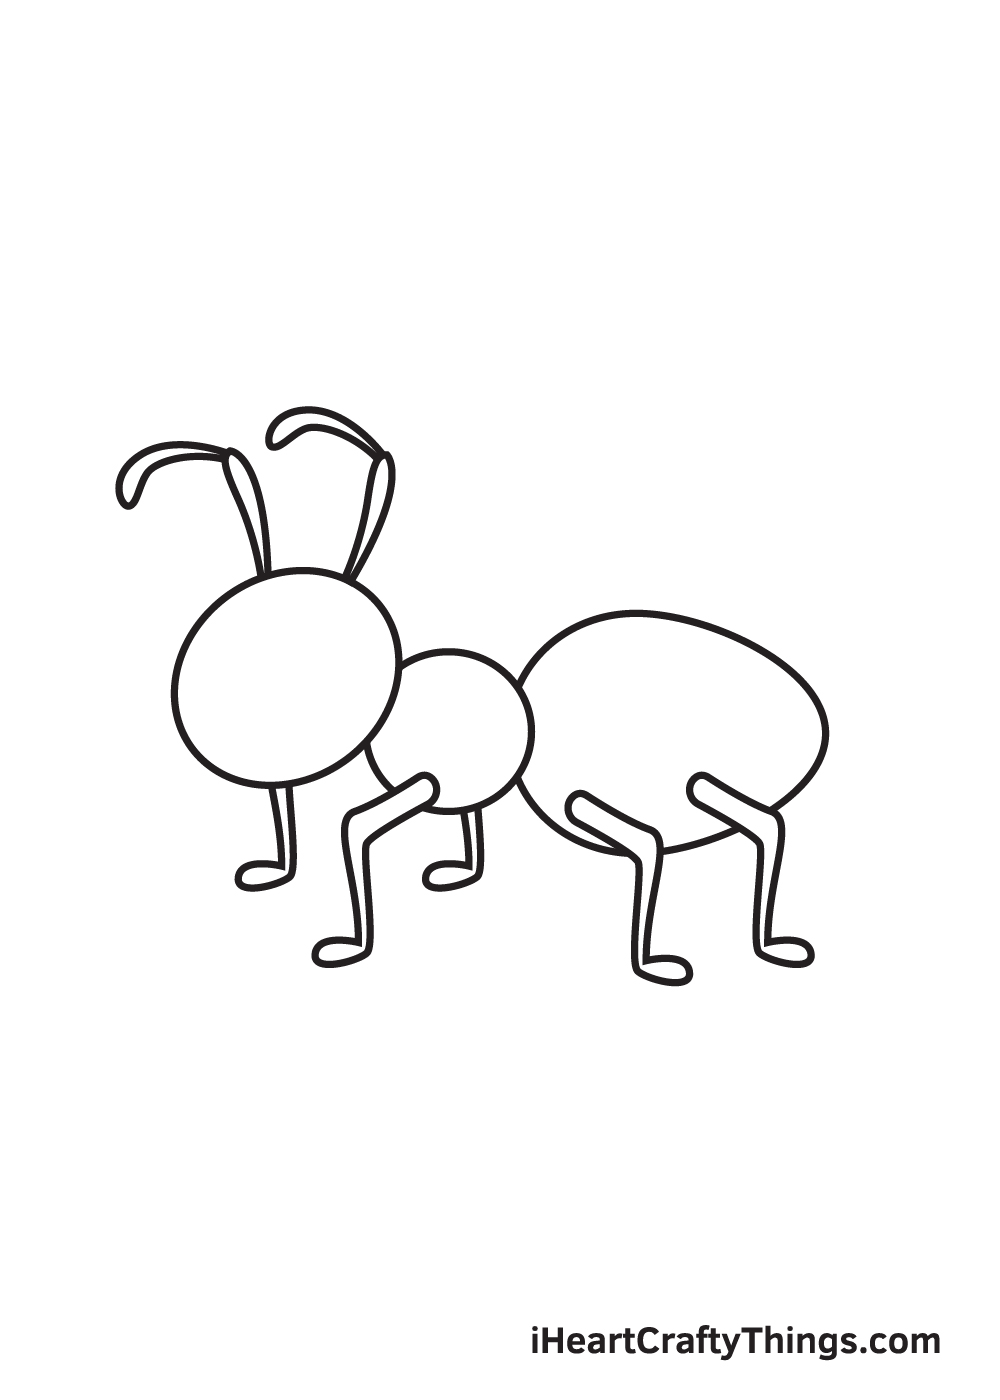 Ant DRAWING – STEP 8 - Hướng dẫn chi tiết cách vẽ con kiến đơn giản với 9 bước cơ bản